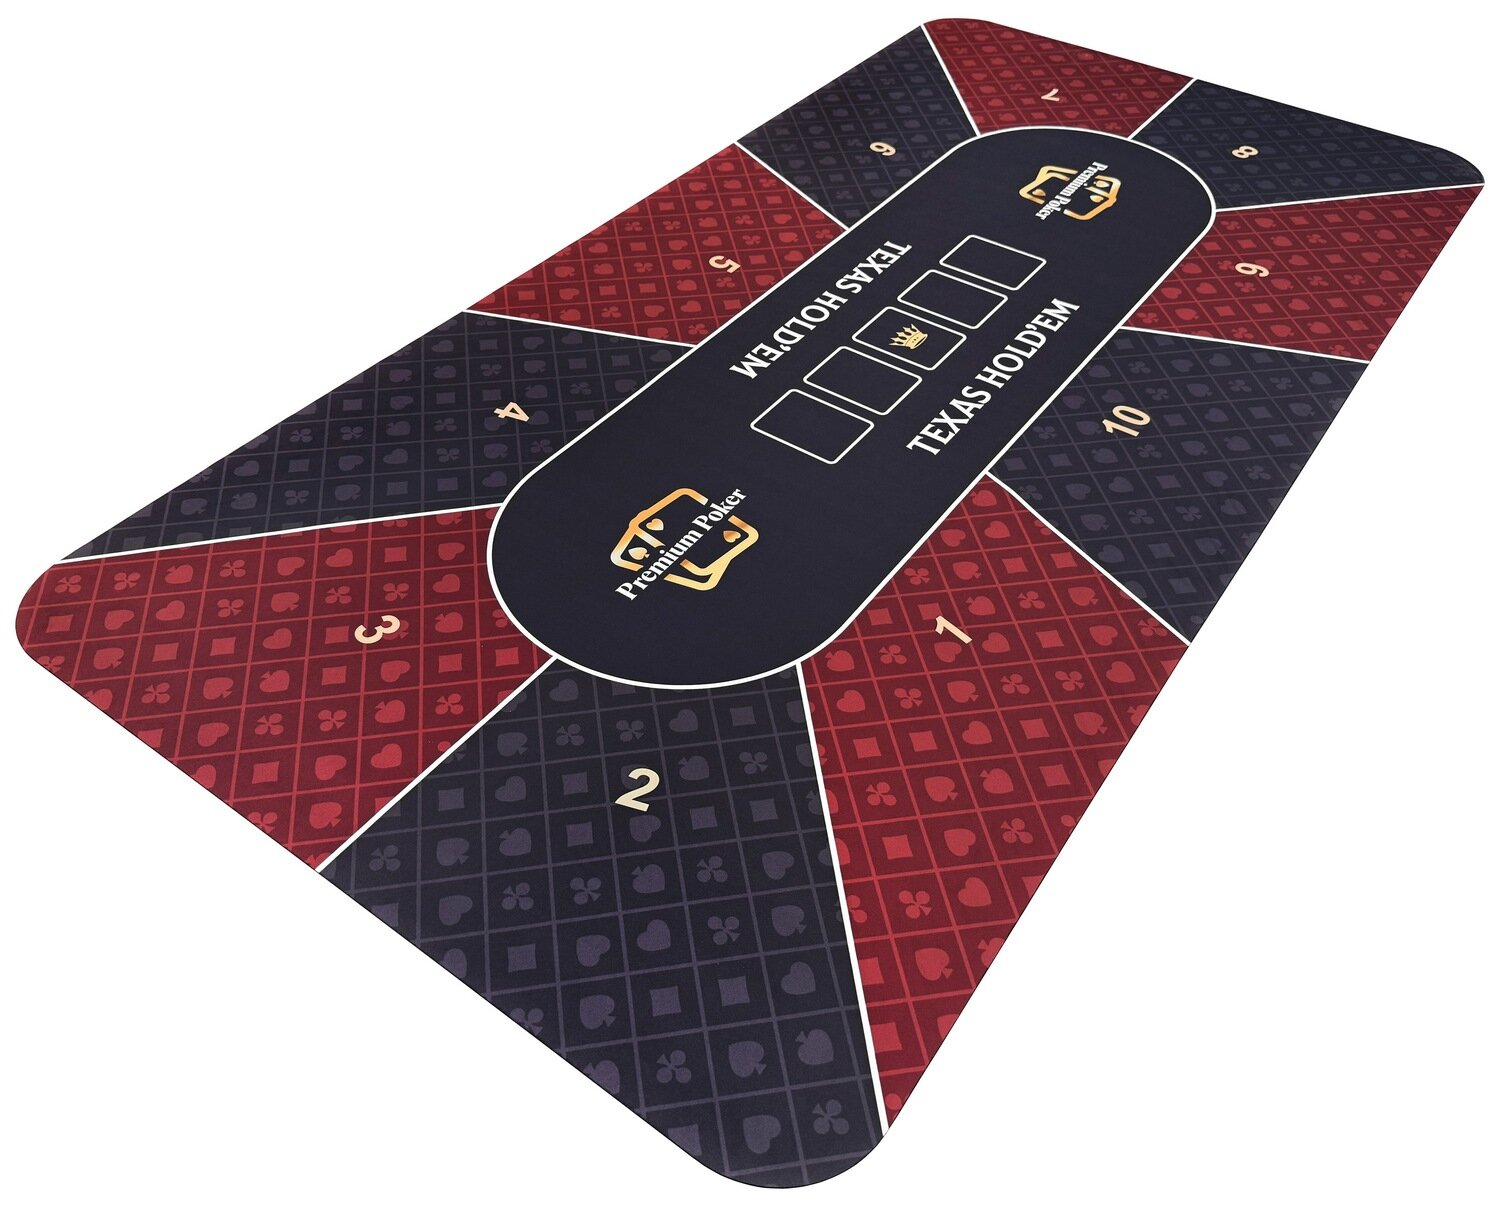 Сукно для игры в покер 90 × 180 см, бордовый/черный